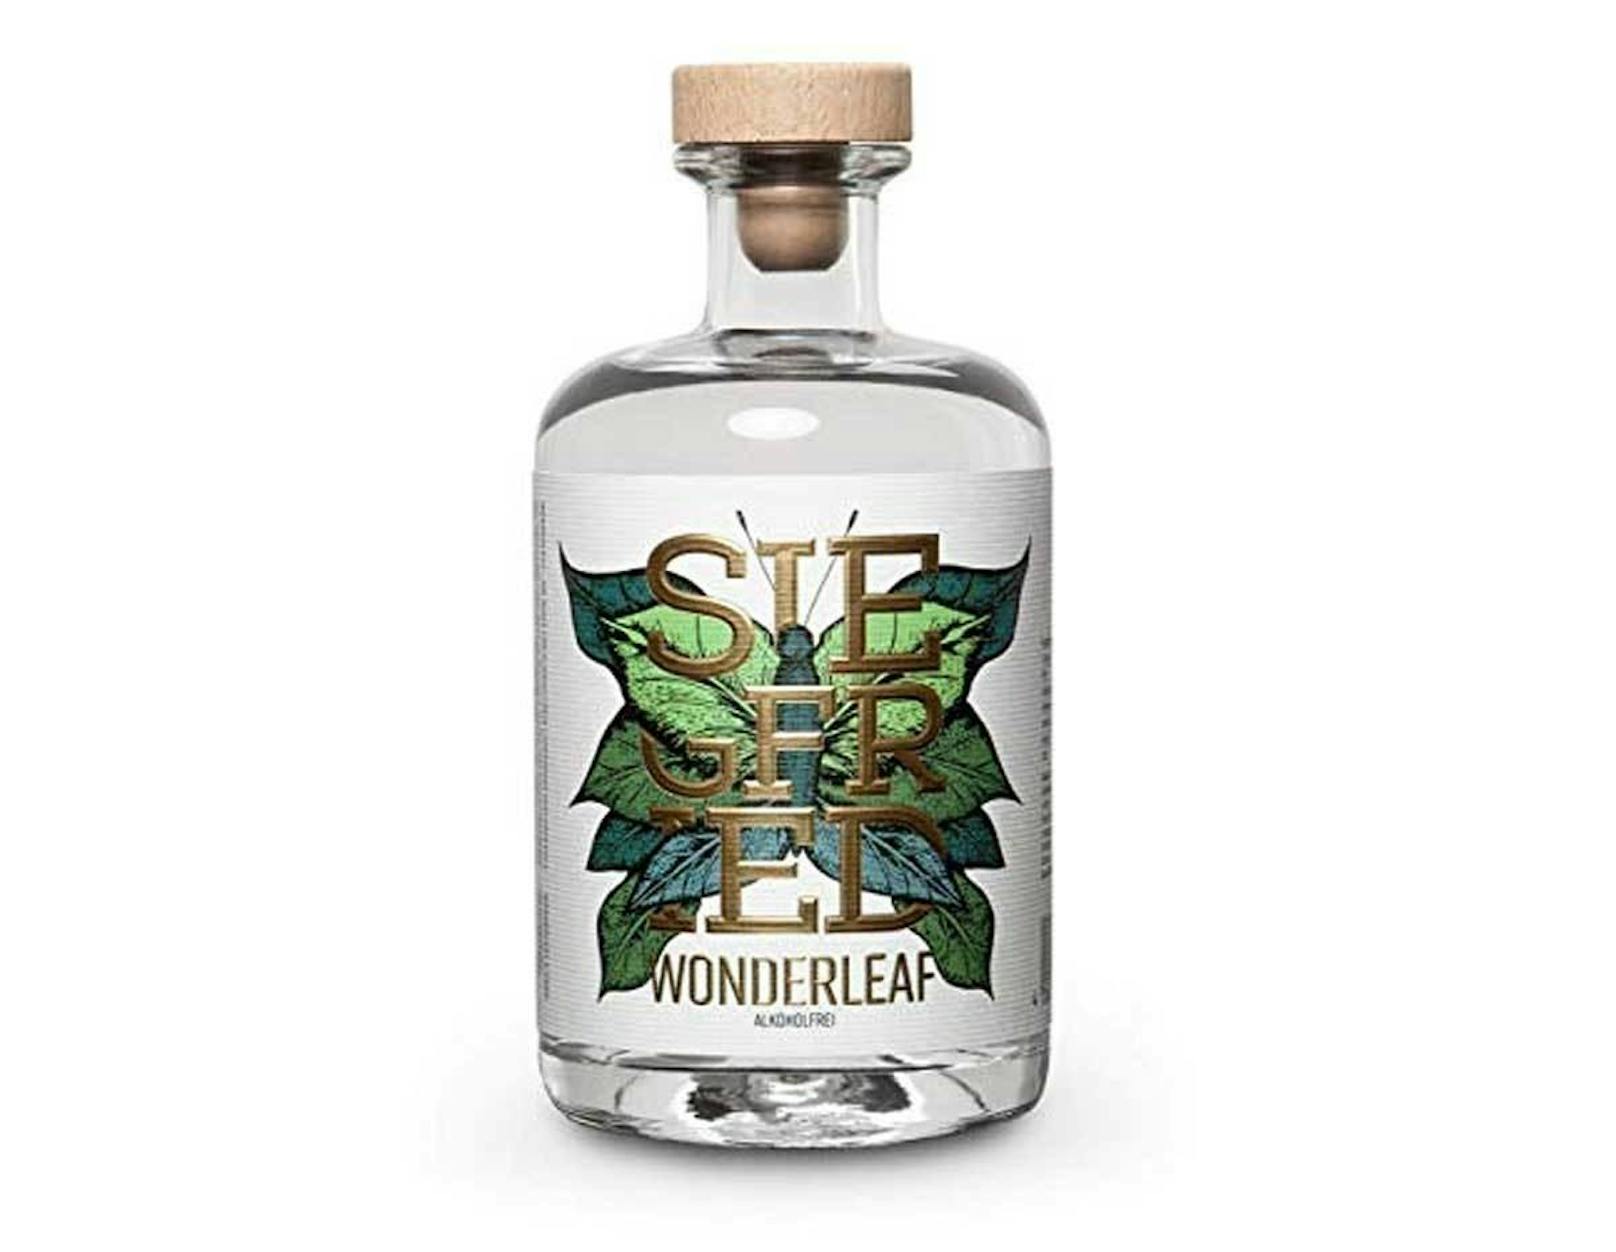 Die deutsche Gin-Marke <b>Siegfried Rheinland Dry Gin</b> entwickelte mit<b> "Wonderleaf" einen alkoholfreien Gin</b>. Die Botanicals des Kräuterwasser ähneln zwar nur im entferntesten denen des Gins der Marke, aber ein neues Geschmackserlebnis kommt damit garantiert ins Glas. Der Preis: 19 Euro.